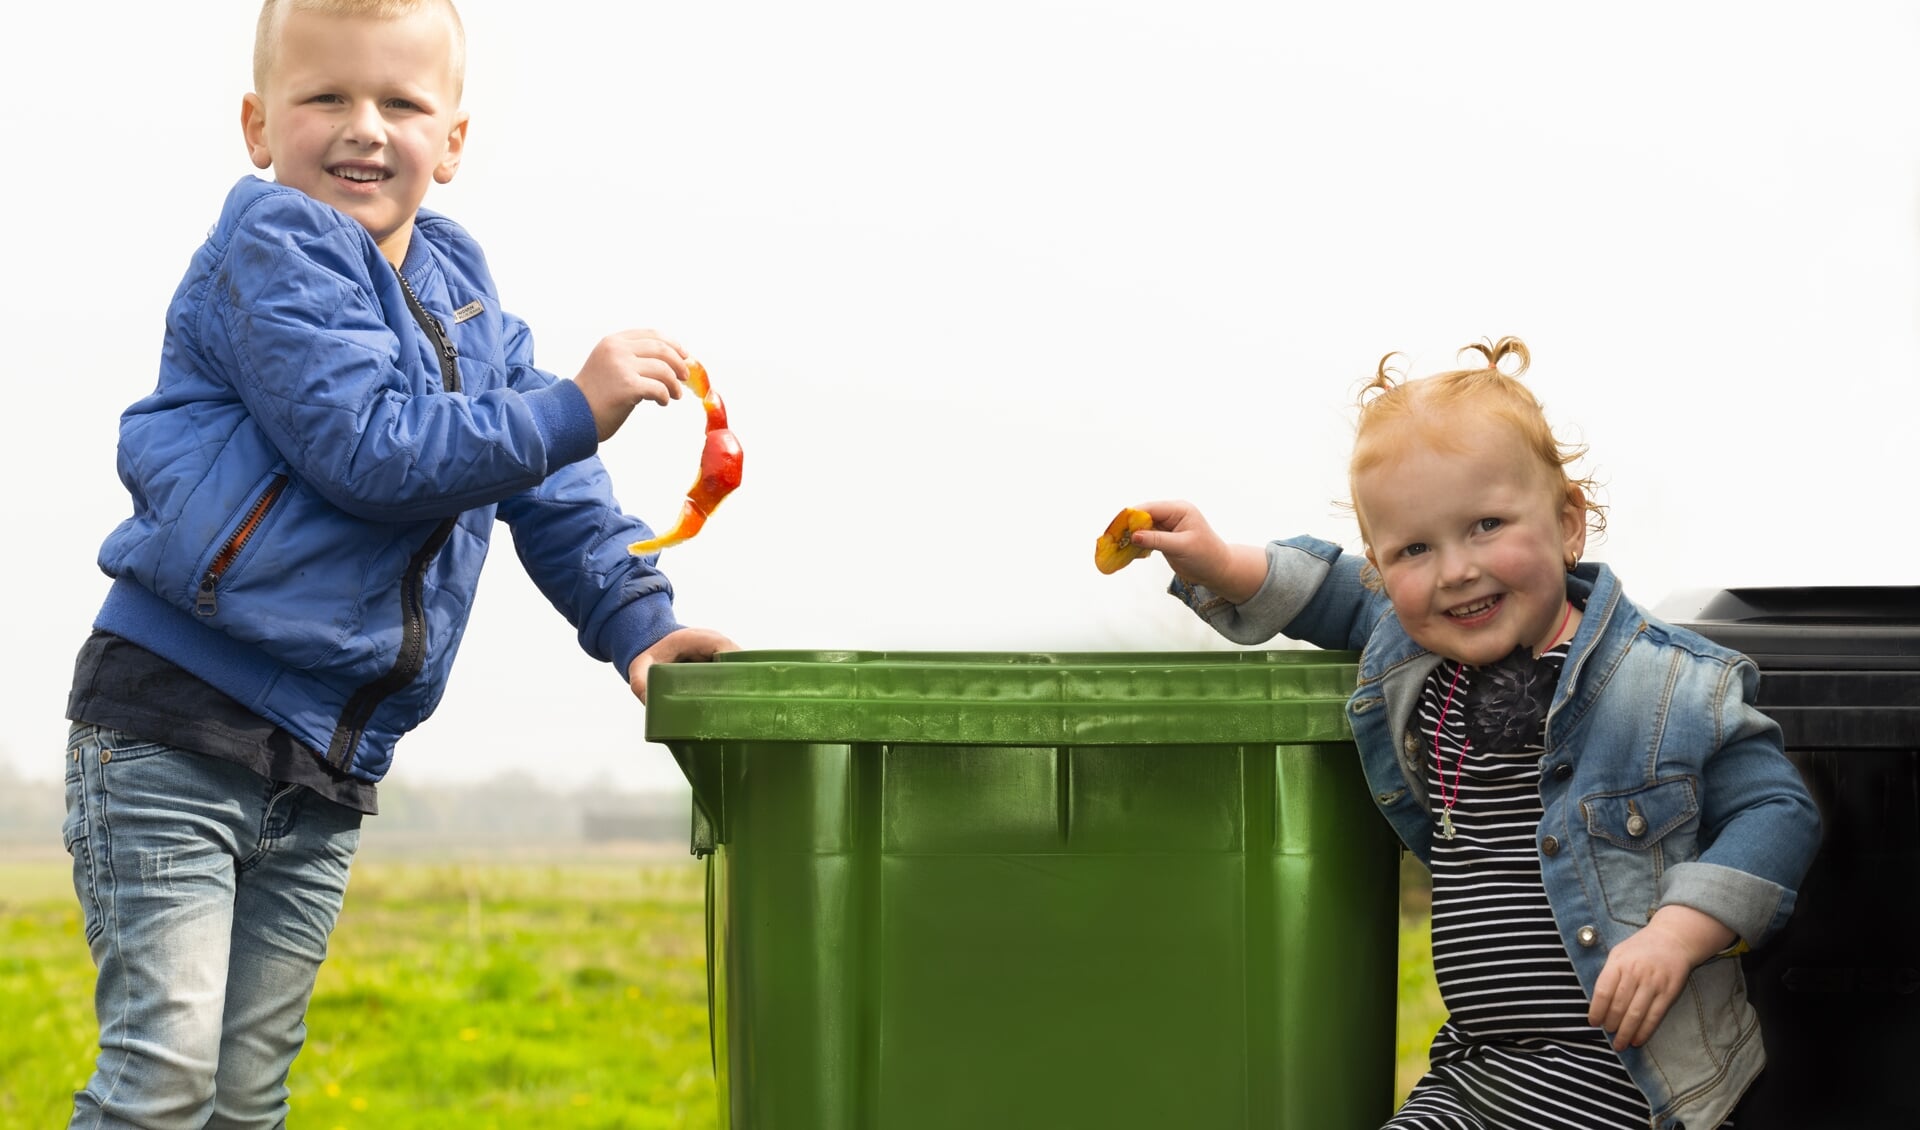 Wie wil weten wanneer je welk afval buiten kunt zetten kan op de app van Saver kijken. FOTO TINEKE VAN DER VEN 